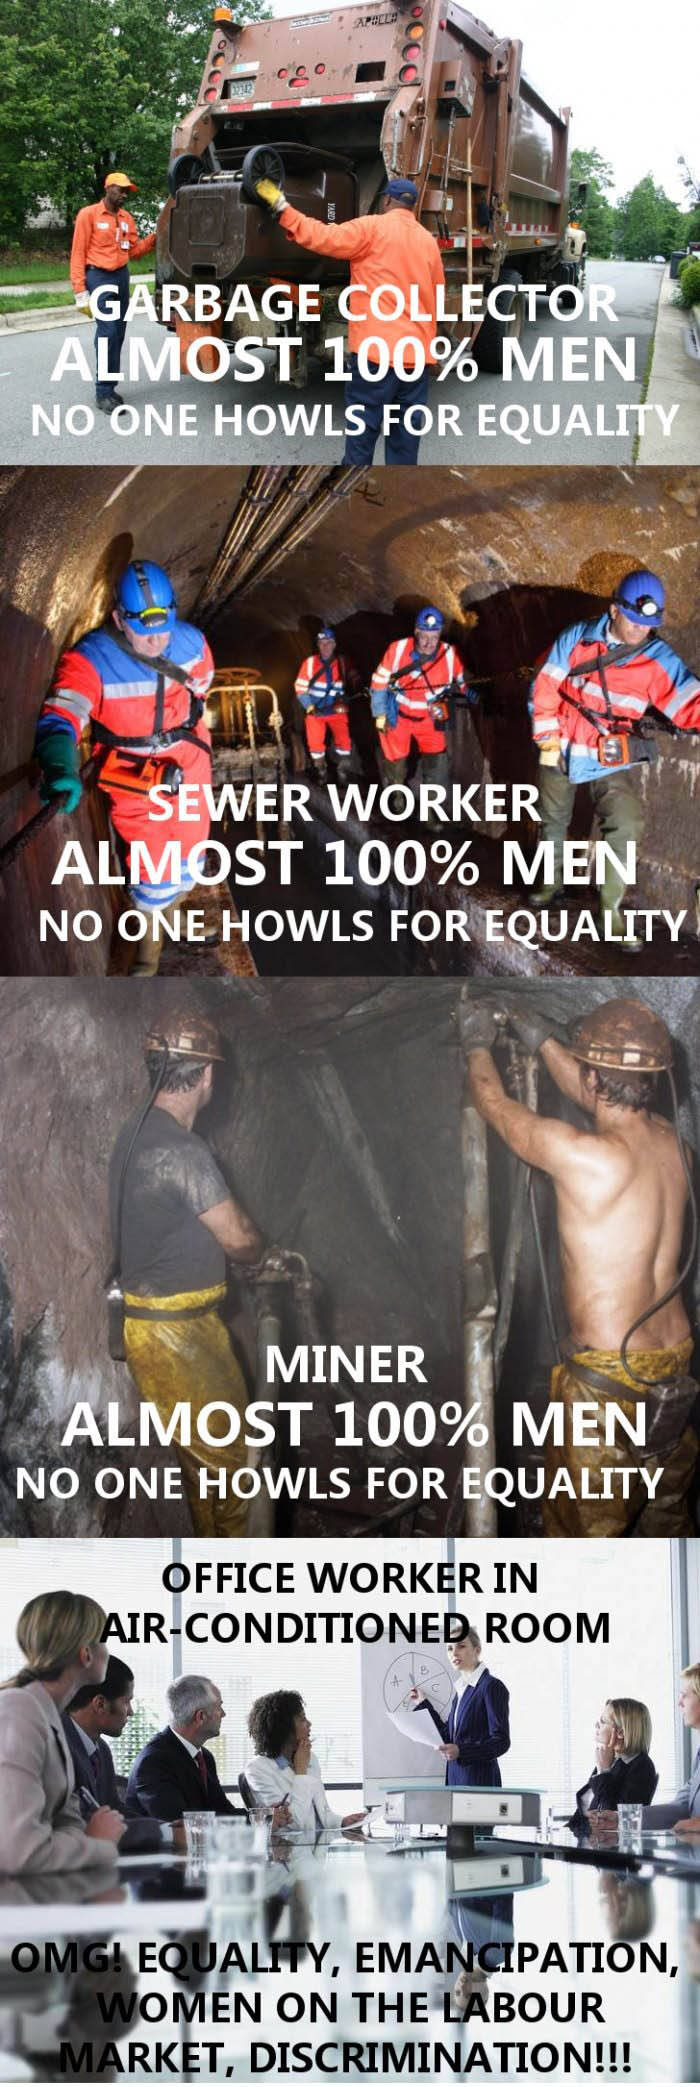 Work equality